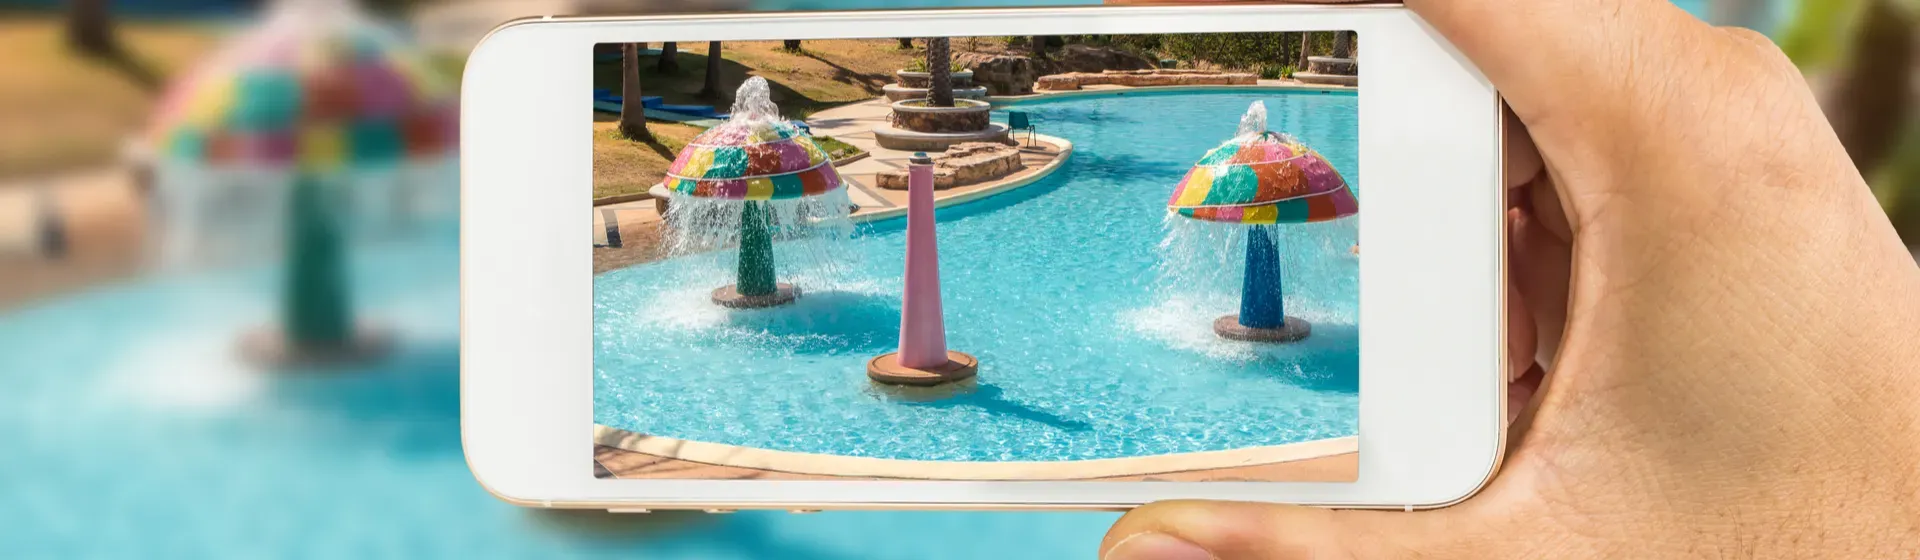 Mulher segurando um smartphone para tirar fotos na piscina